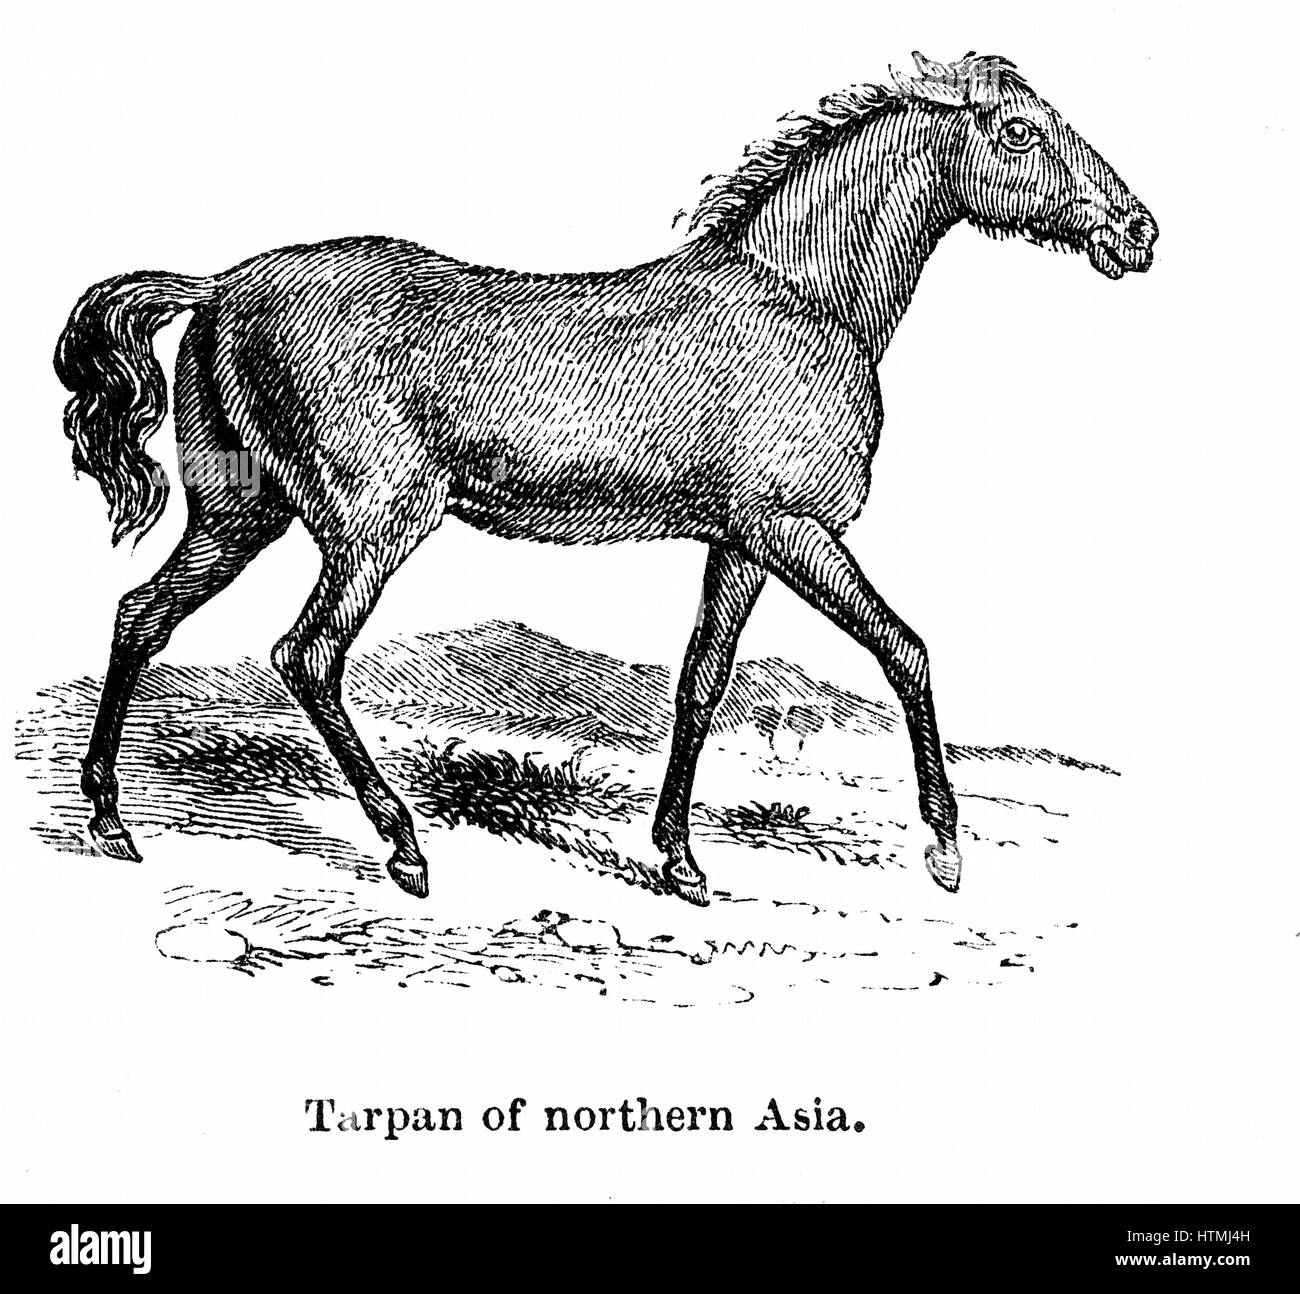 Tarpan preistorico wild horse di cui morirono nel tardo Ottocento. Genetica moderna creazione realizzata negli anni trenta con razze di pony con Tarpan ancestry. Incisione su legno 1850. Foto Stock